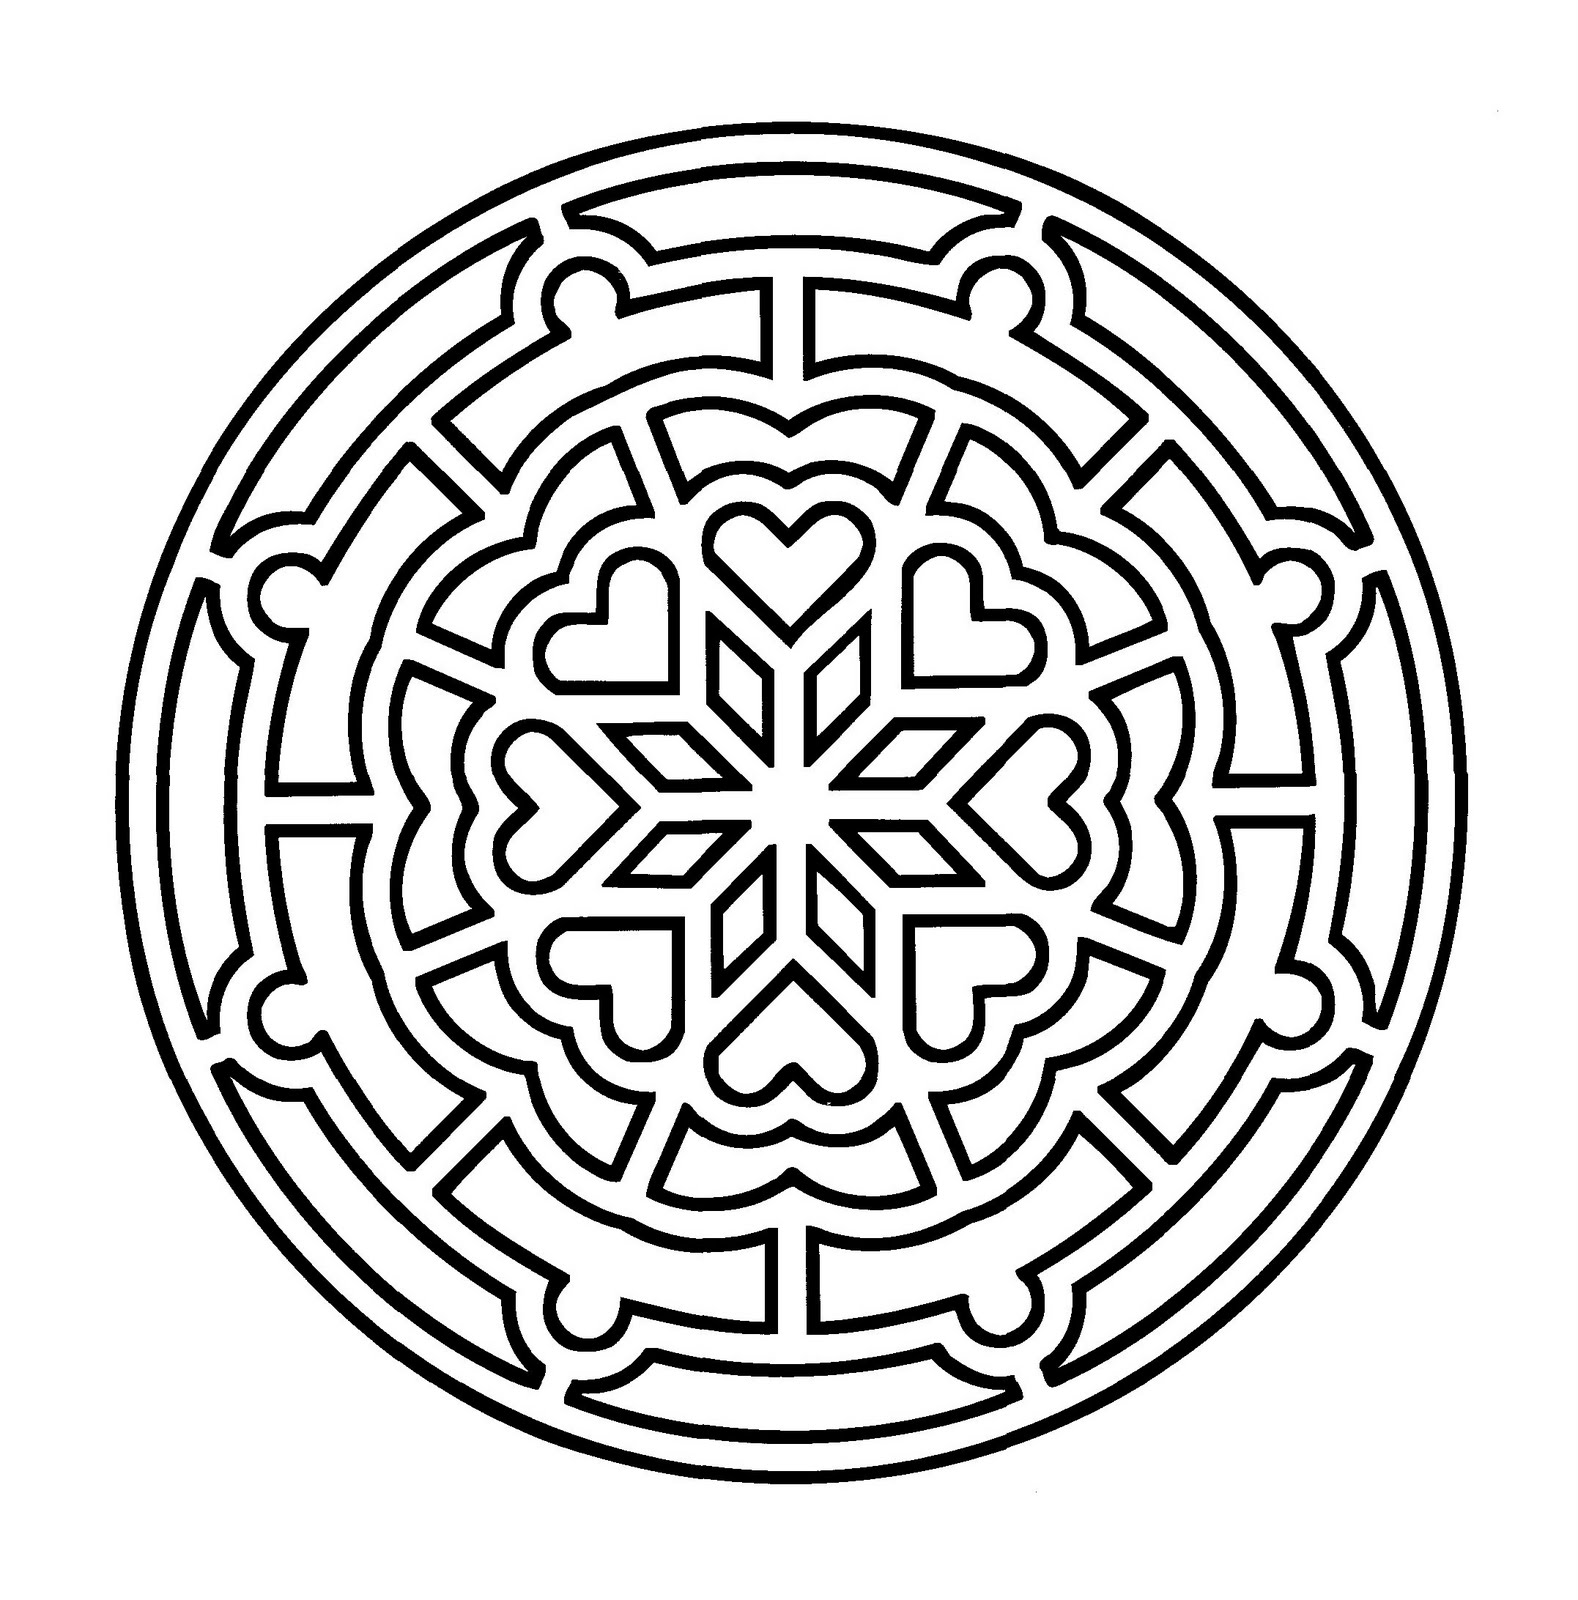 Mandala geometrico da colorare con cuori al centro.